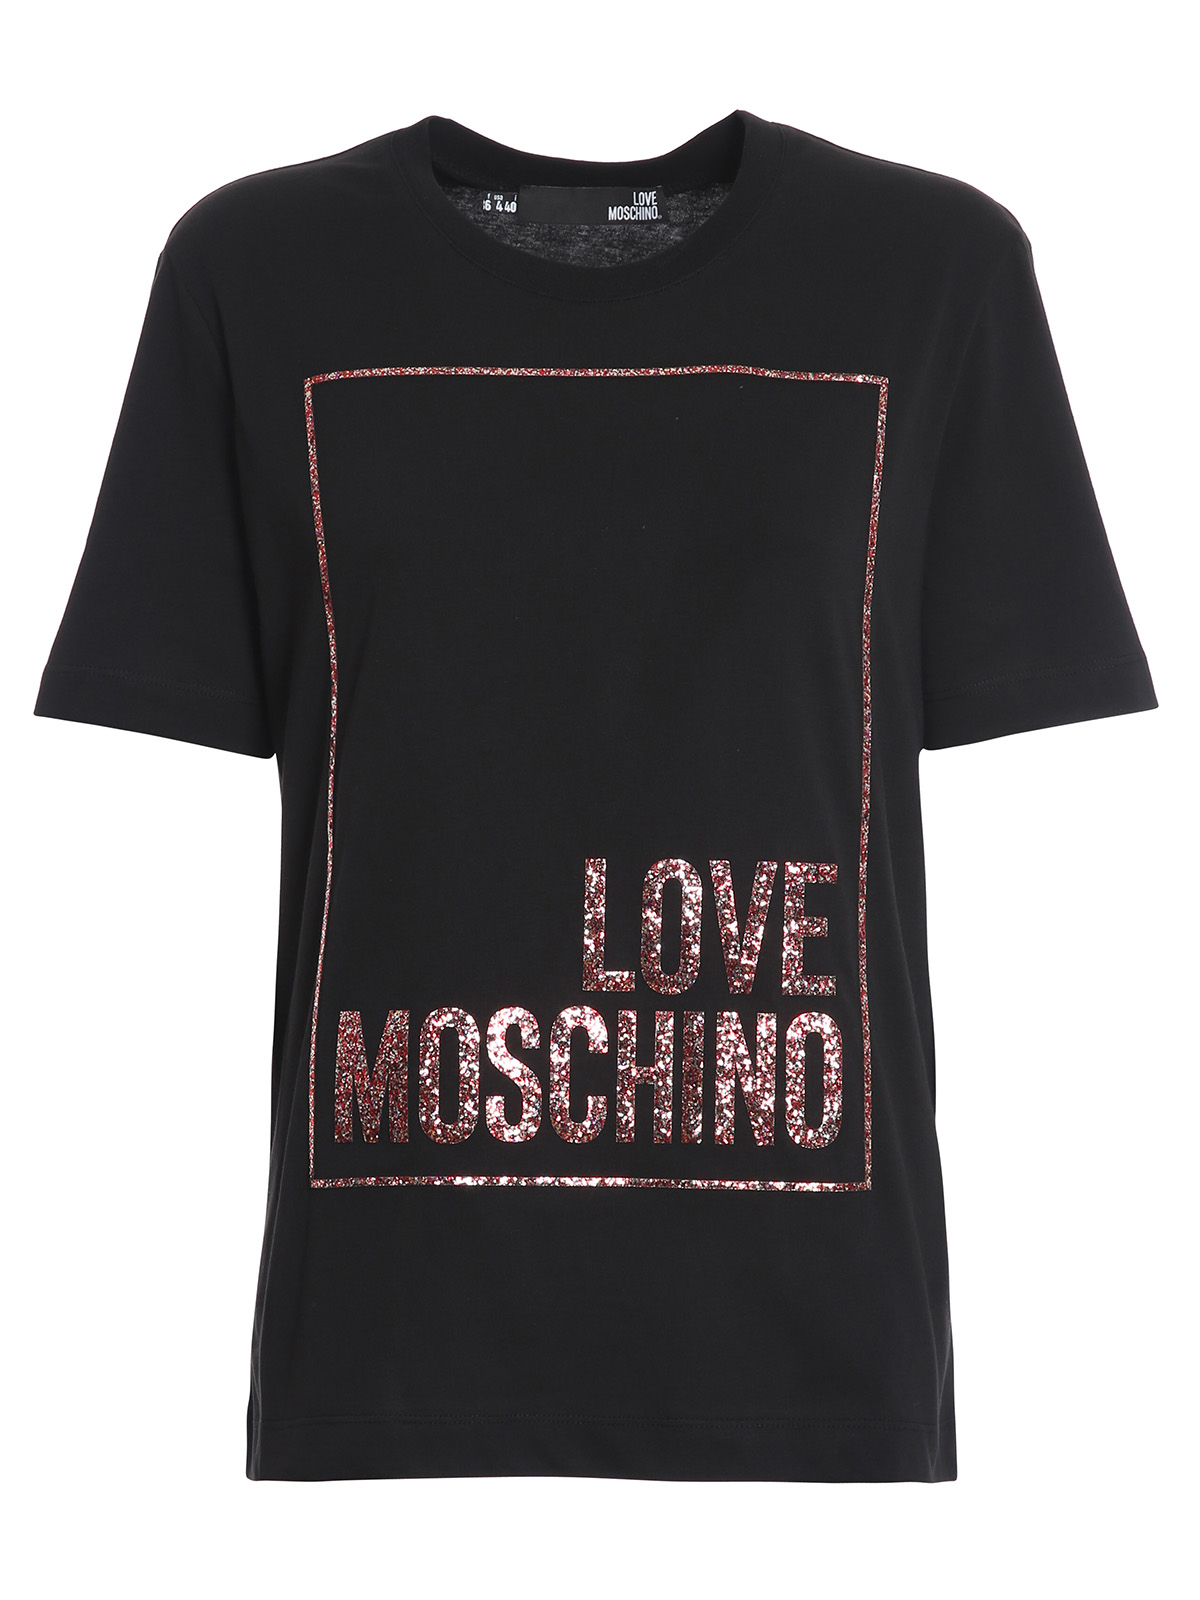 Love Moschino T Shirt Store, 52% OFF | www.ingeniovirtual.com